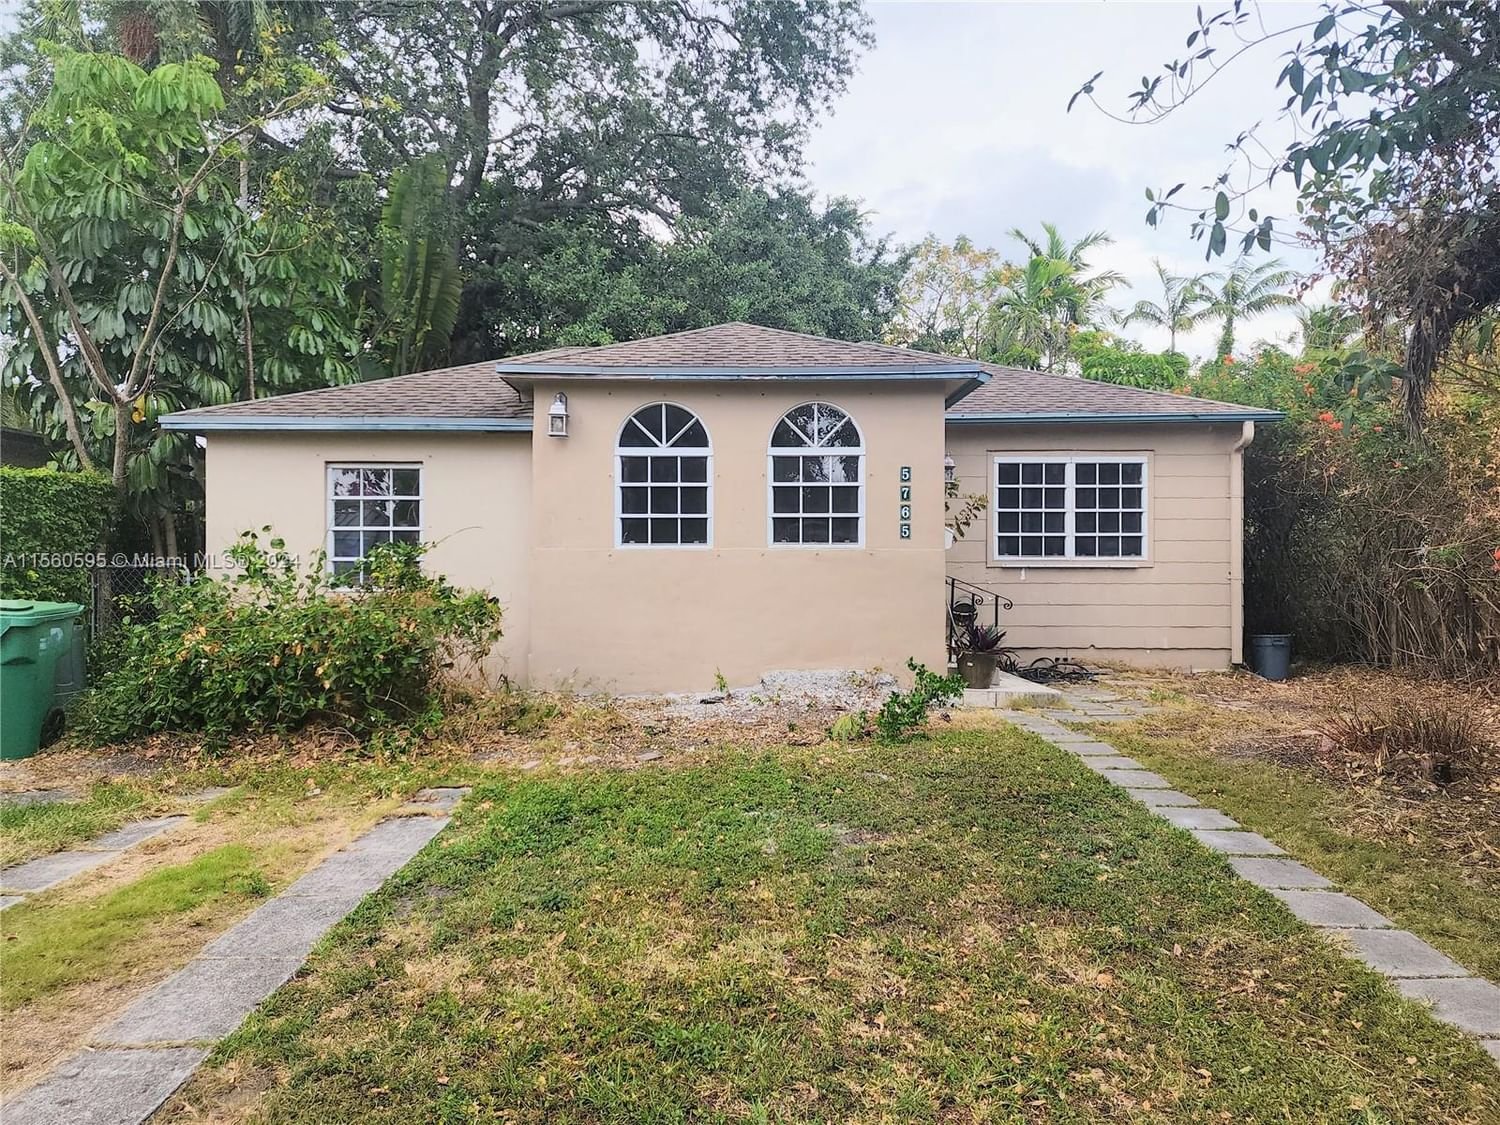 Real estate property located at 5765 47th St, Miami-Dade County, RIVIERA ESTATES, Miami, FL